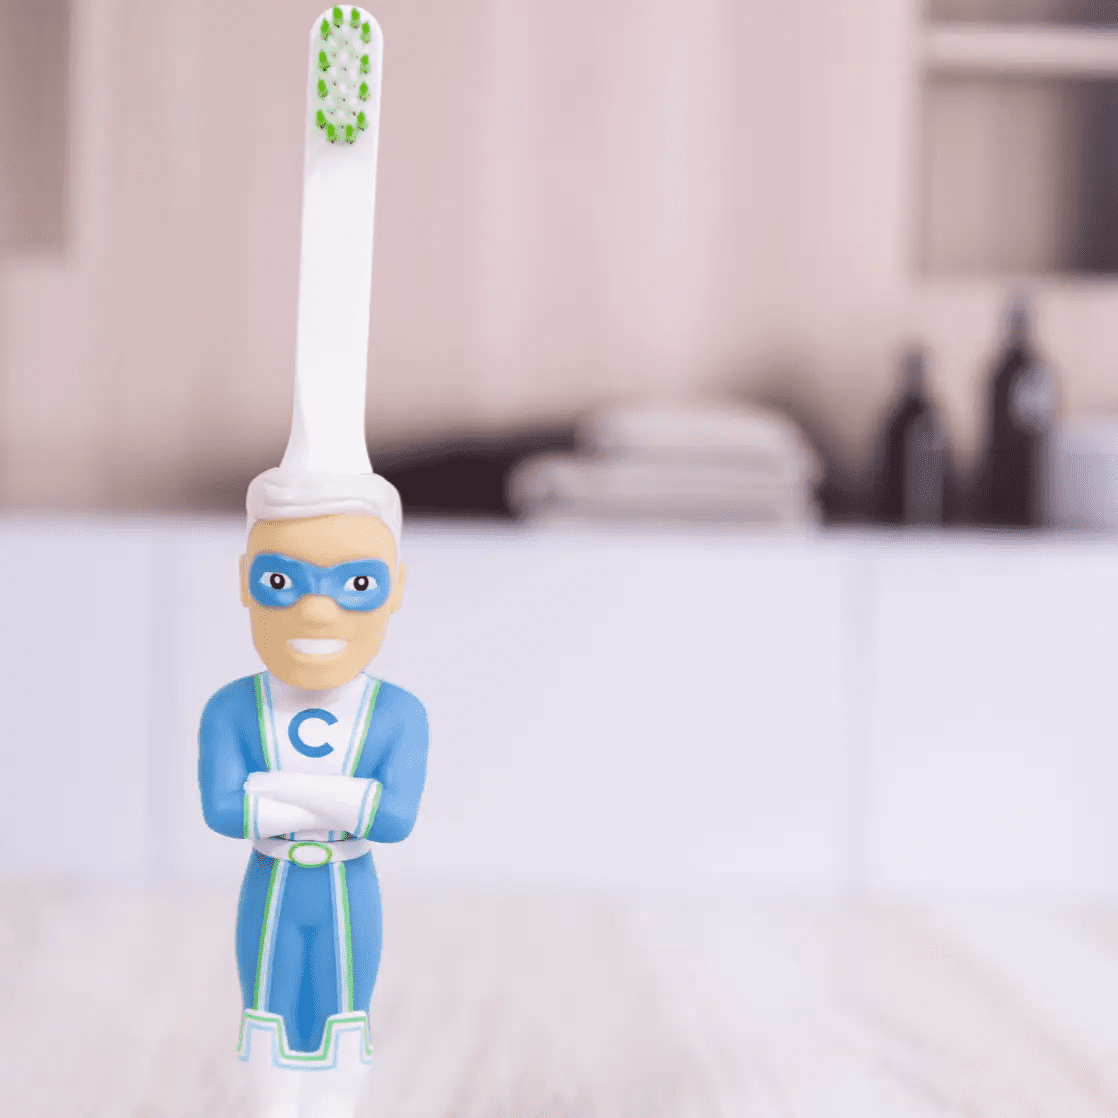 Captain Cavity superhero toothbrush shaped like a figurine